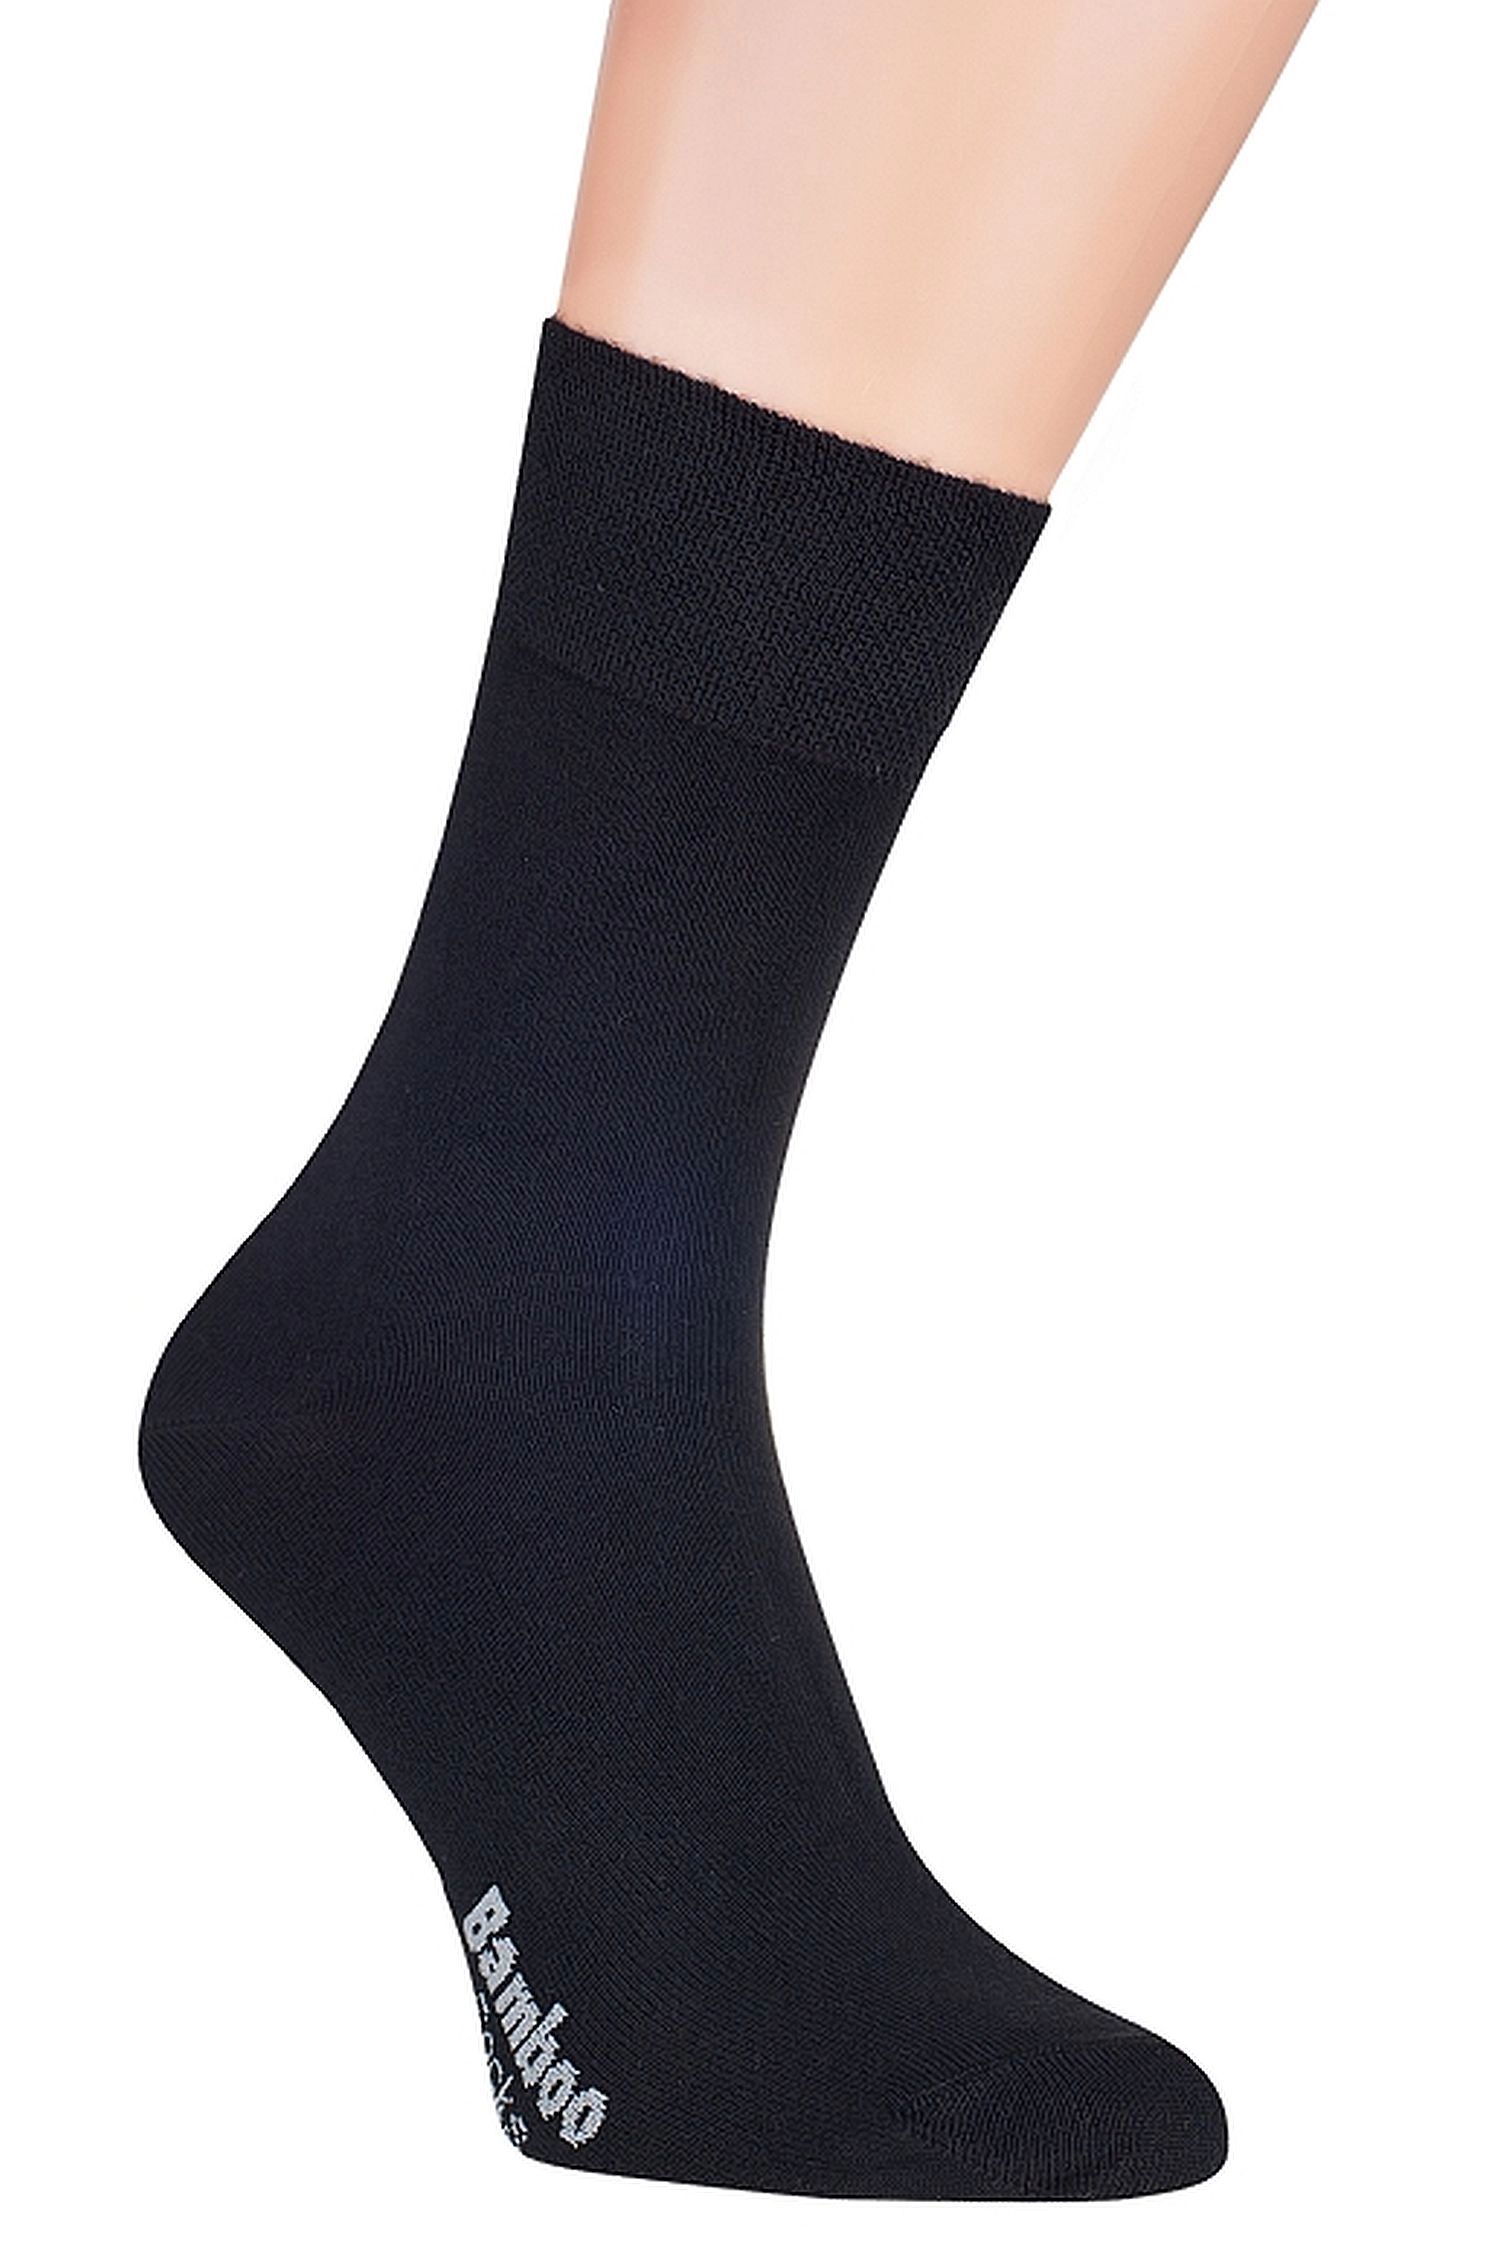 E-shop Pánske ponožky 09 black